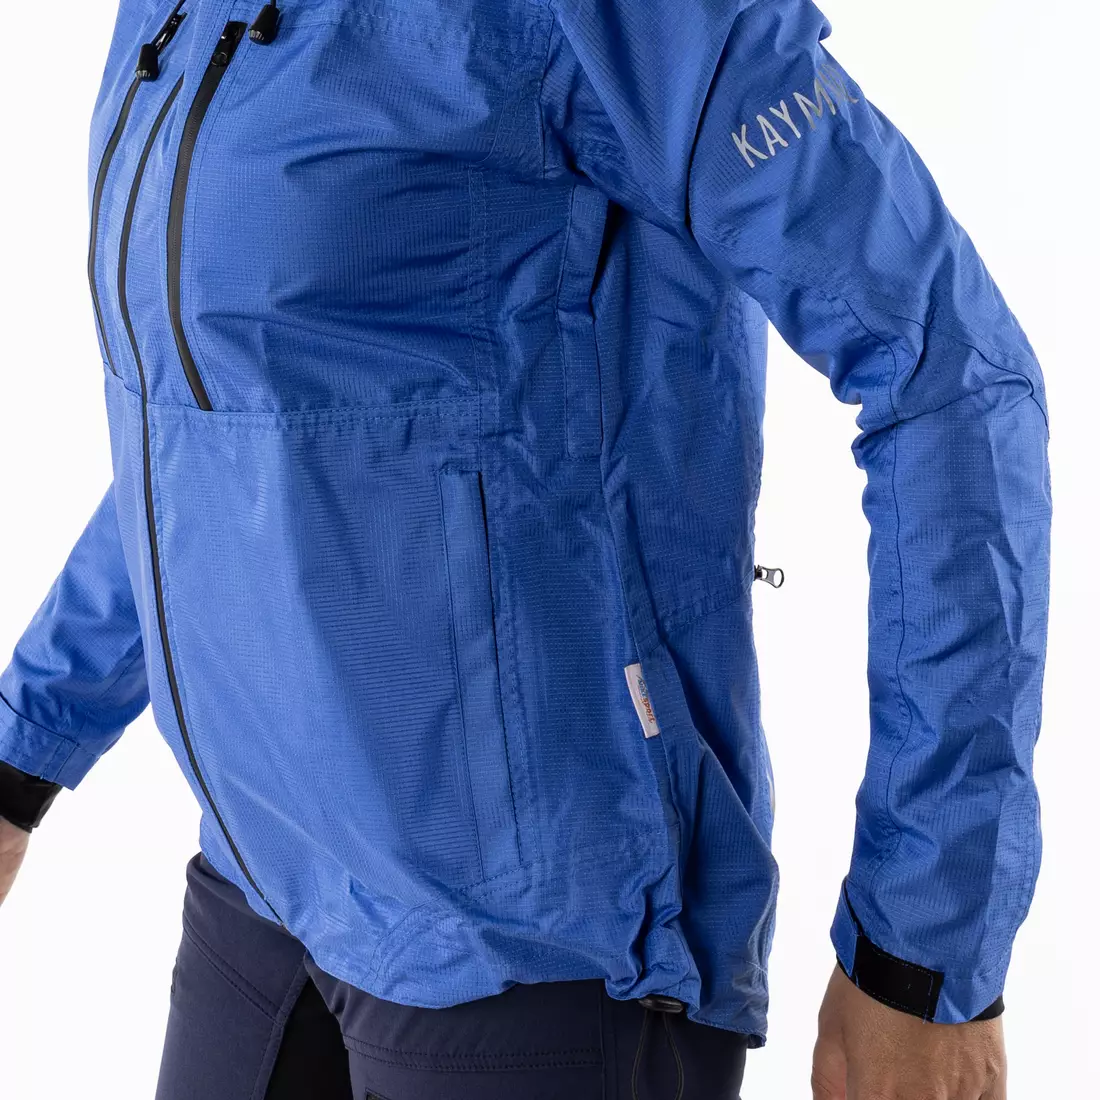 KAYMAQ J2WH női kapucnis eső kerékpáros dzseki, kék